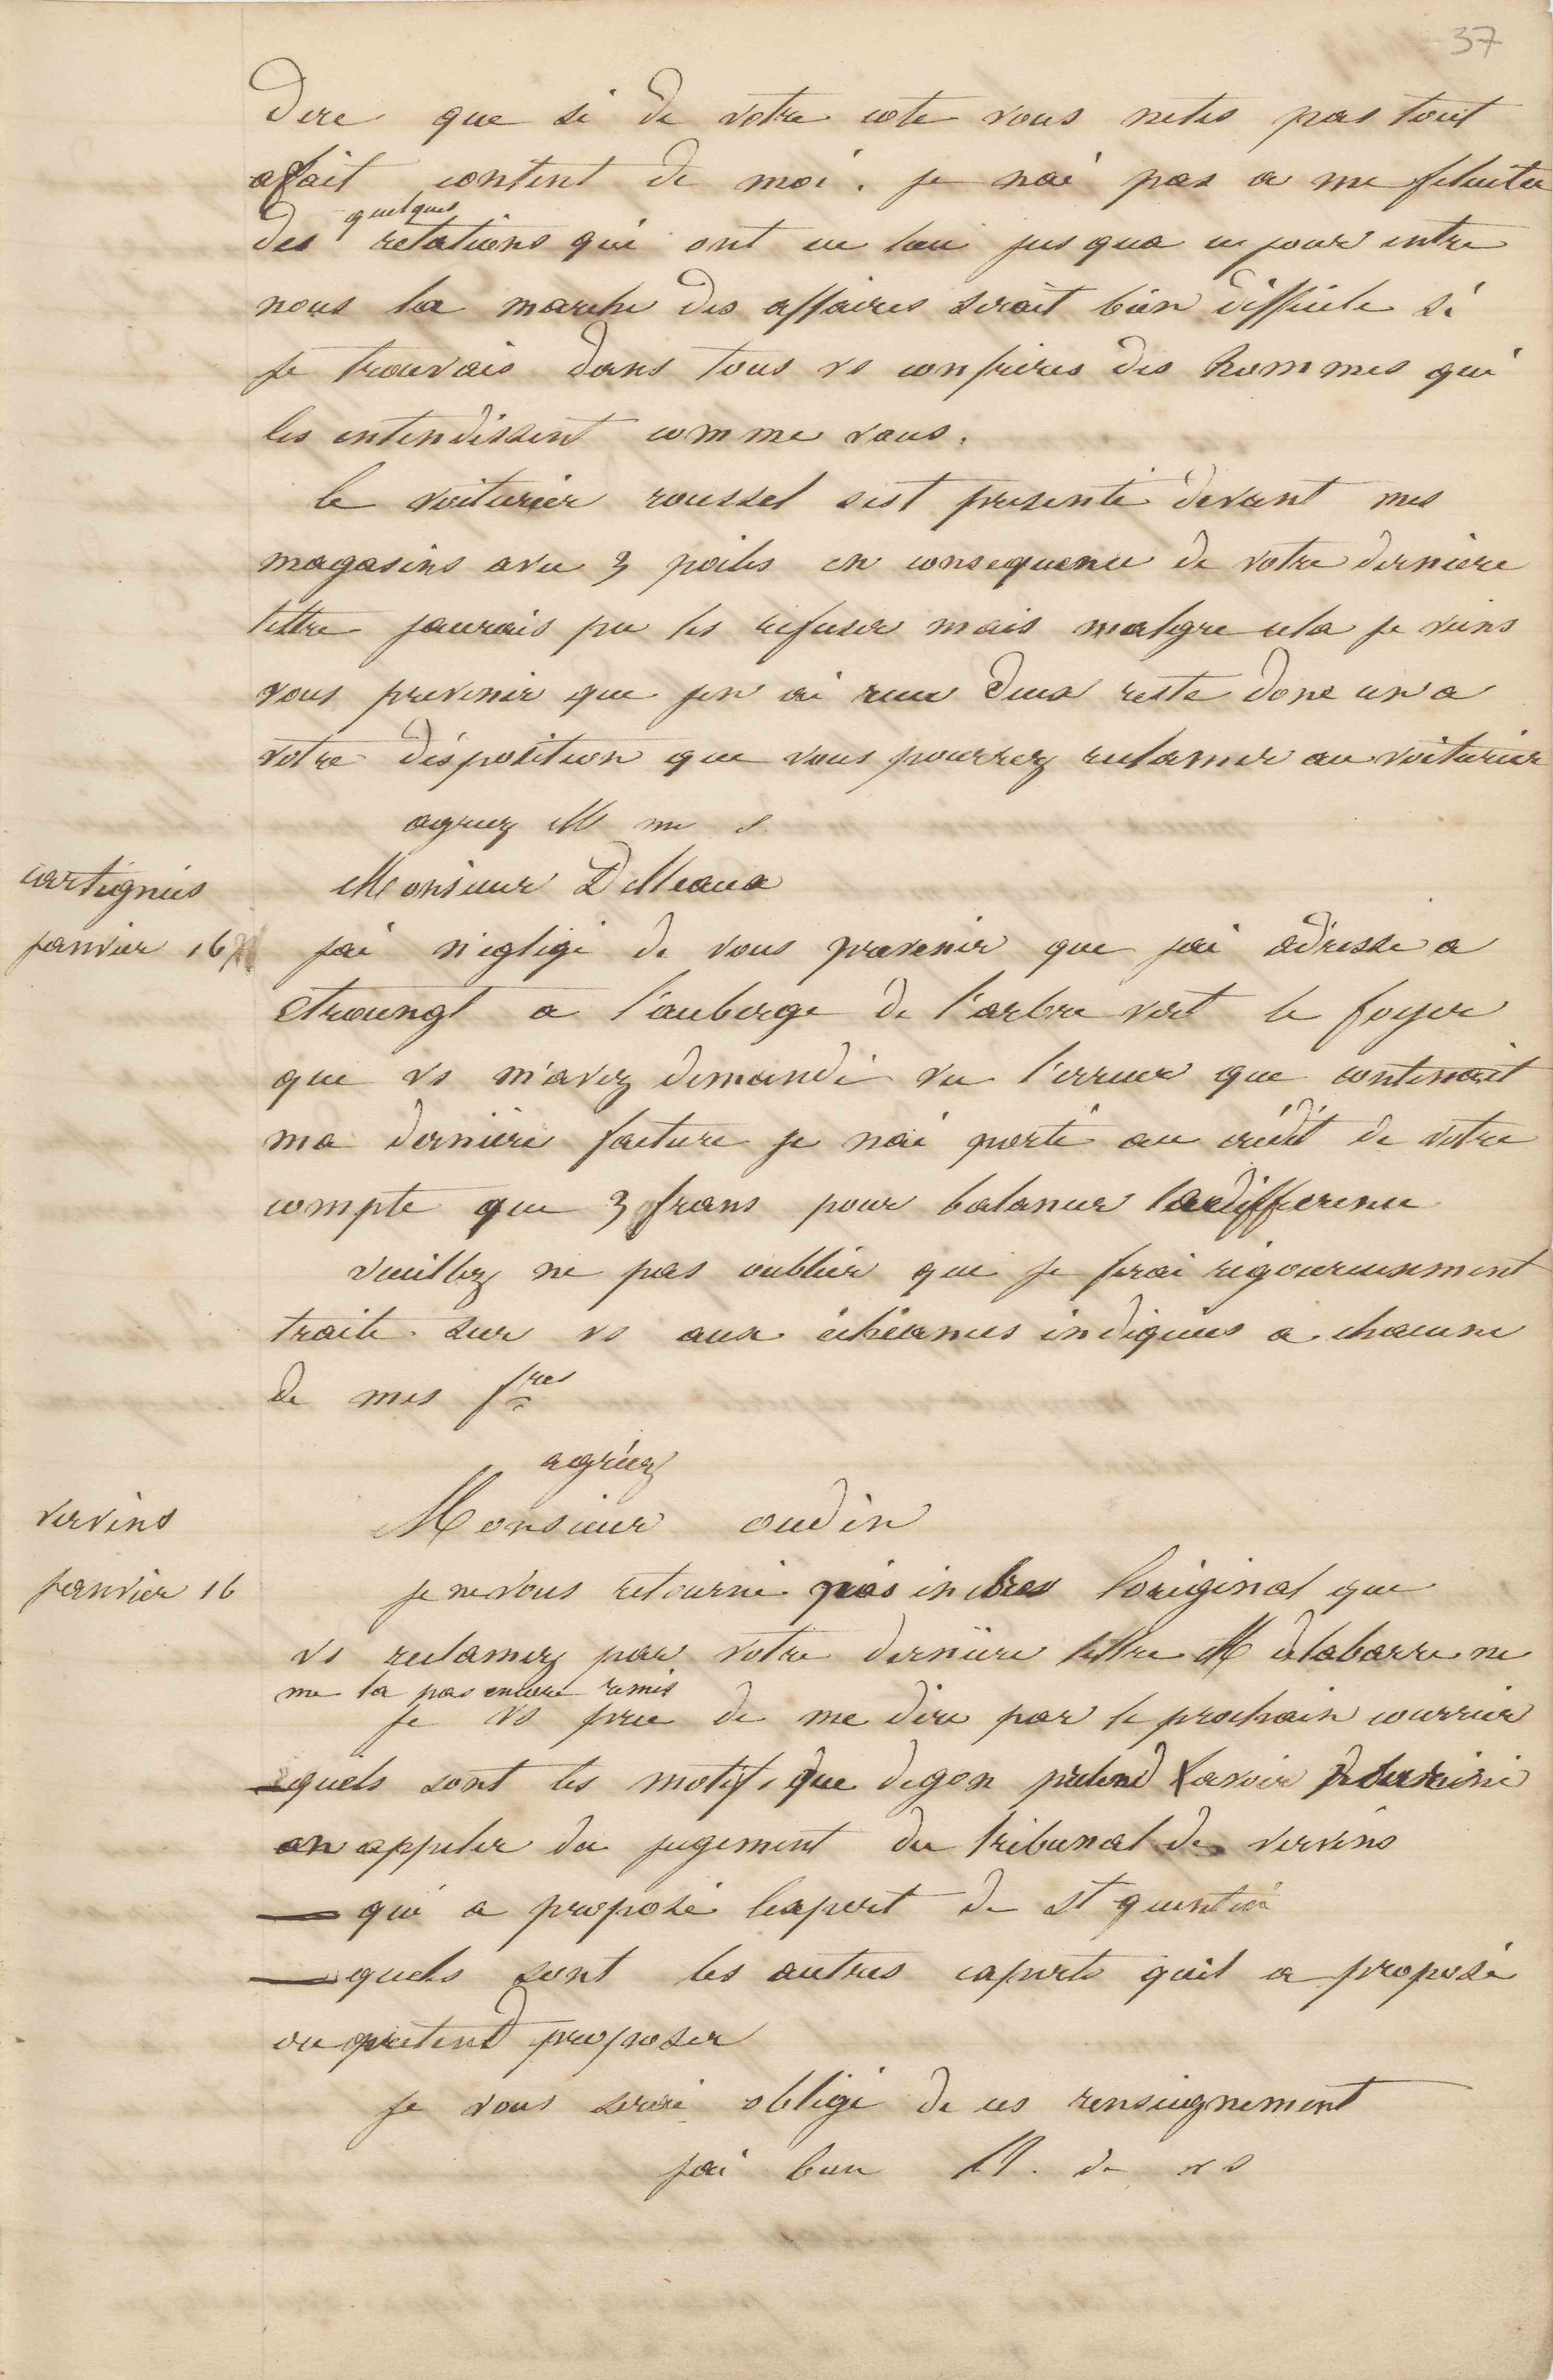 Jean-Baptiste André Godin à monsieur Decroix, 16 janvier 1847